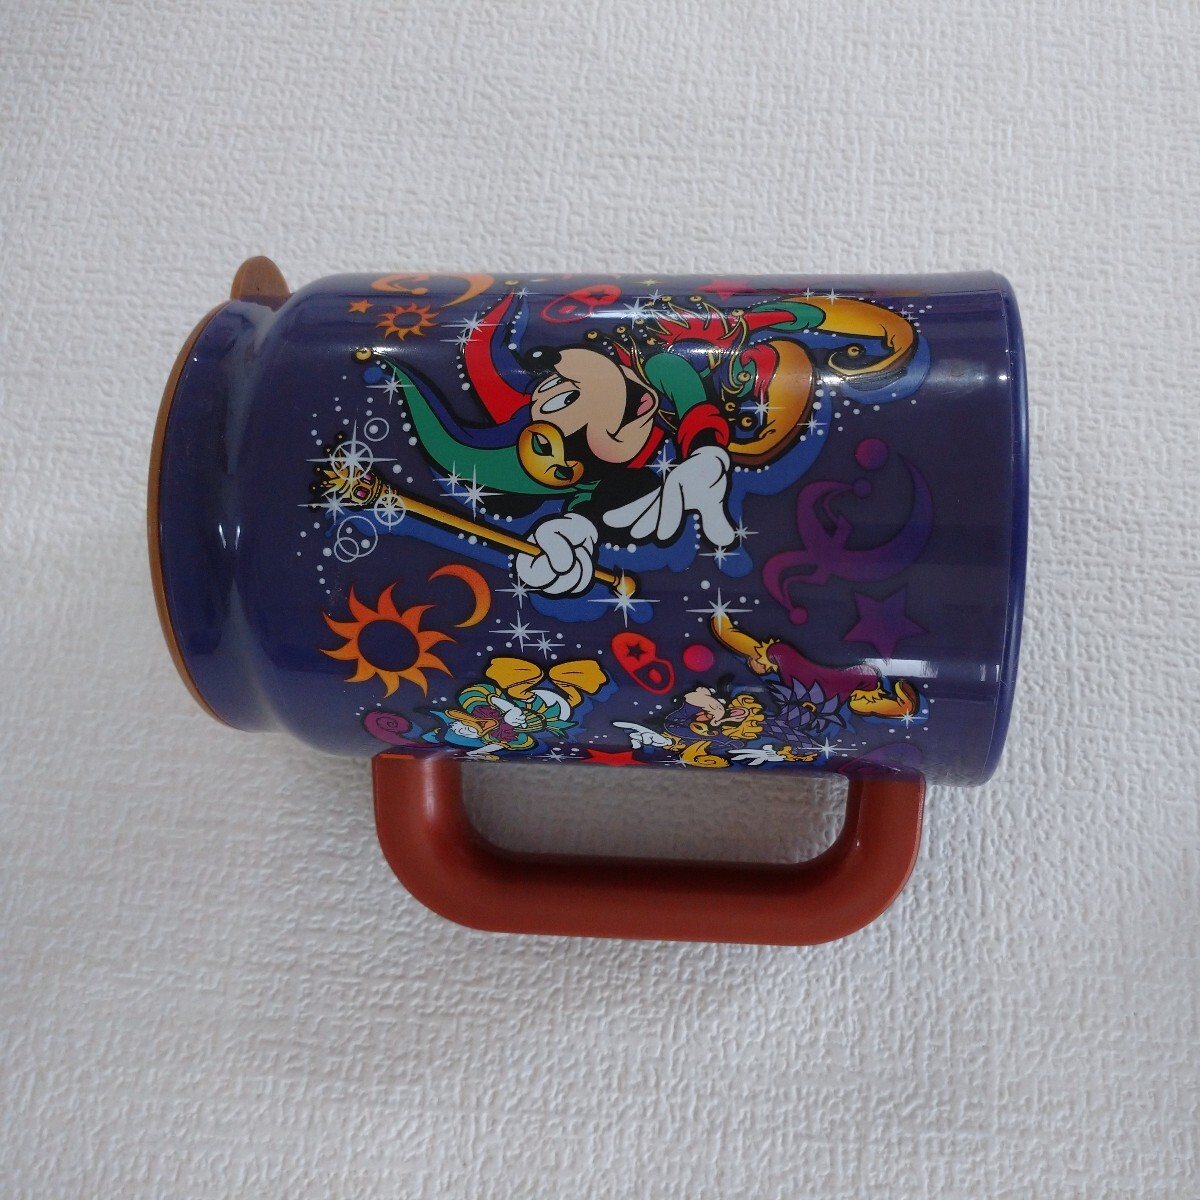 a29 Disney コップ マグカップ ディズニー キャラクターグッズ 当時物 15周年記念品 アニバーサリー高さ 14cm 横幅 10cm Mickey Mouse _画像2